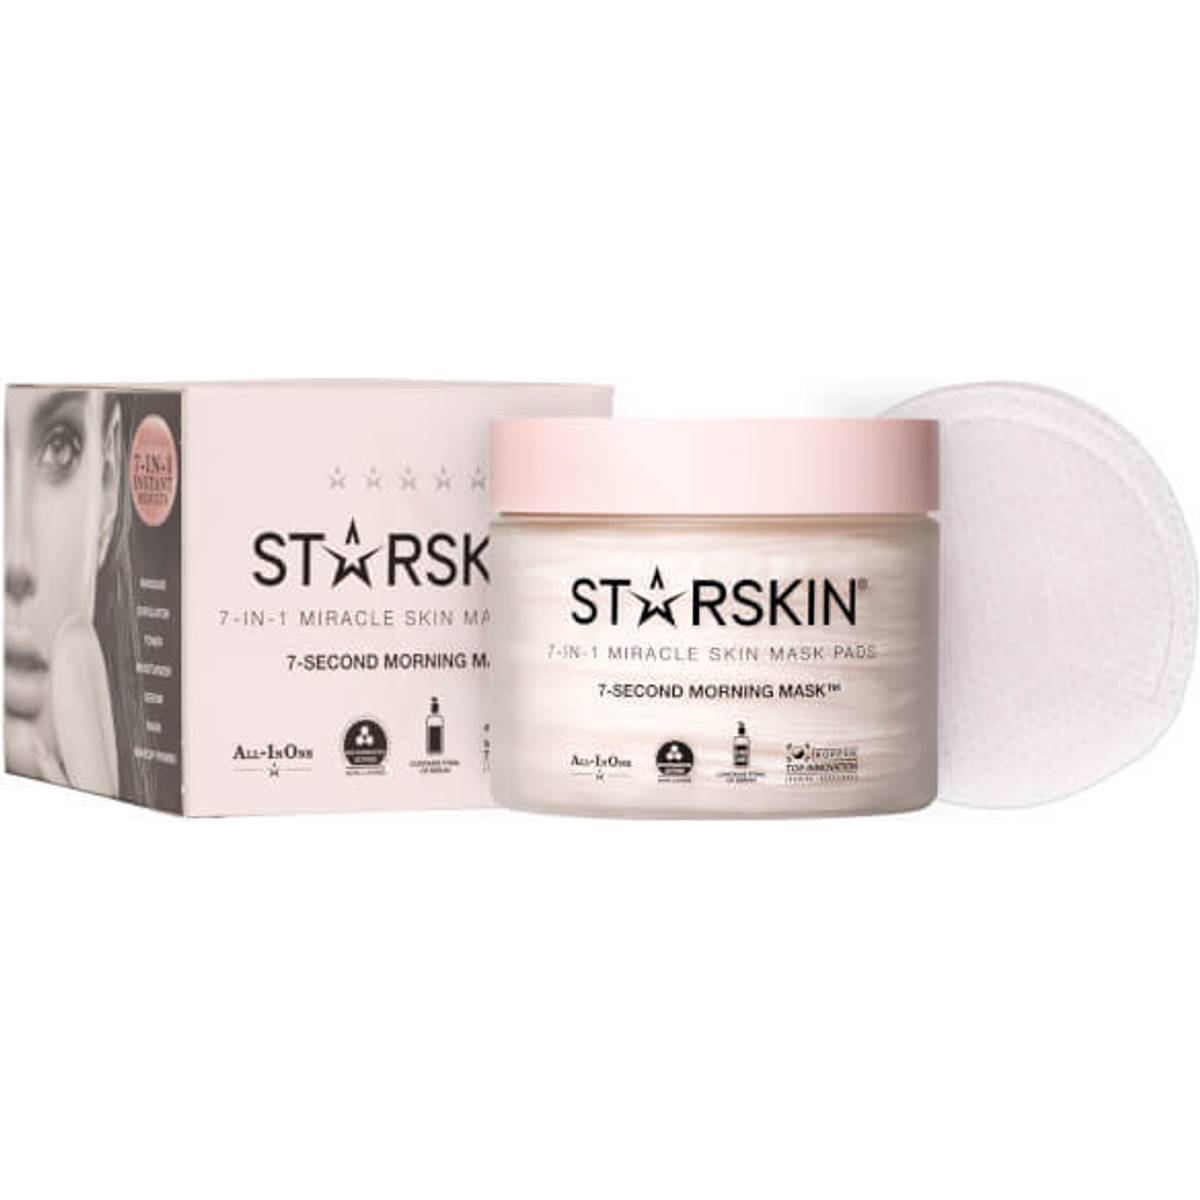 Starskin Ansigtsmaske (35 produkter) hos PriceRunner • Se priser nu »